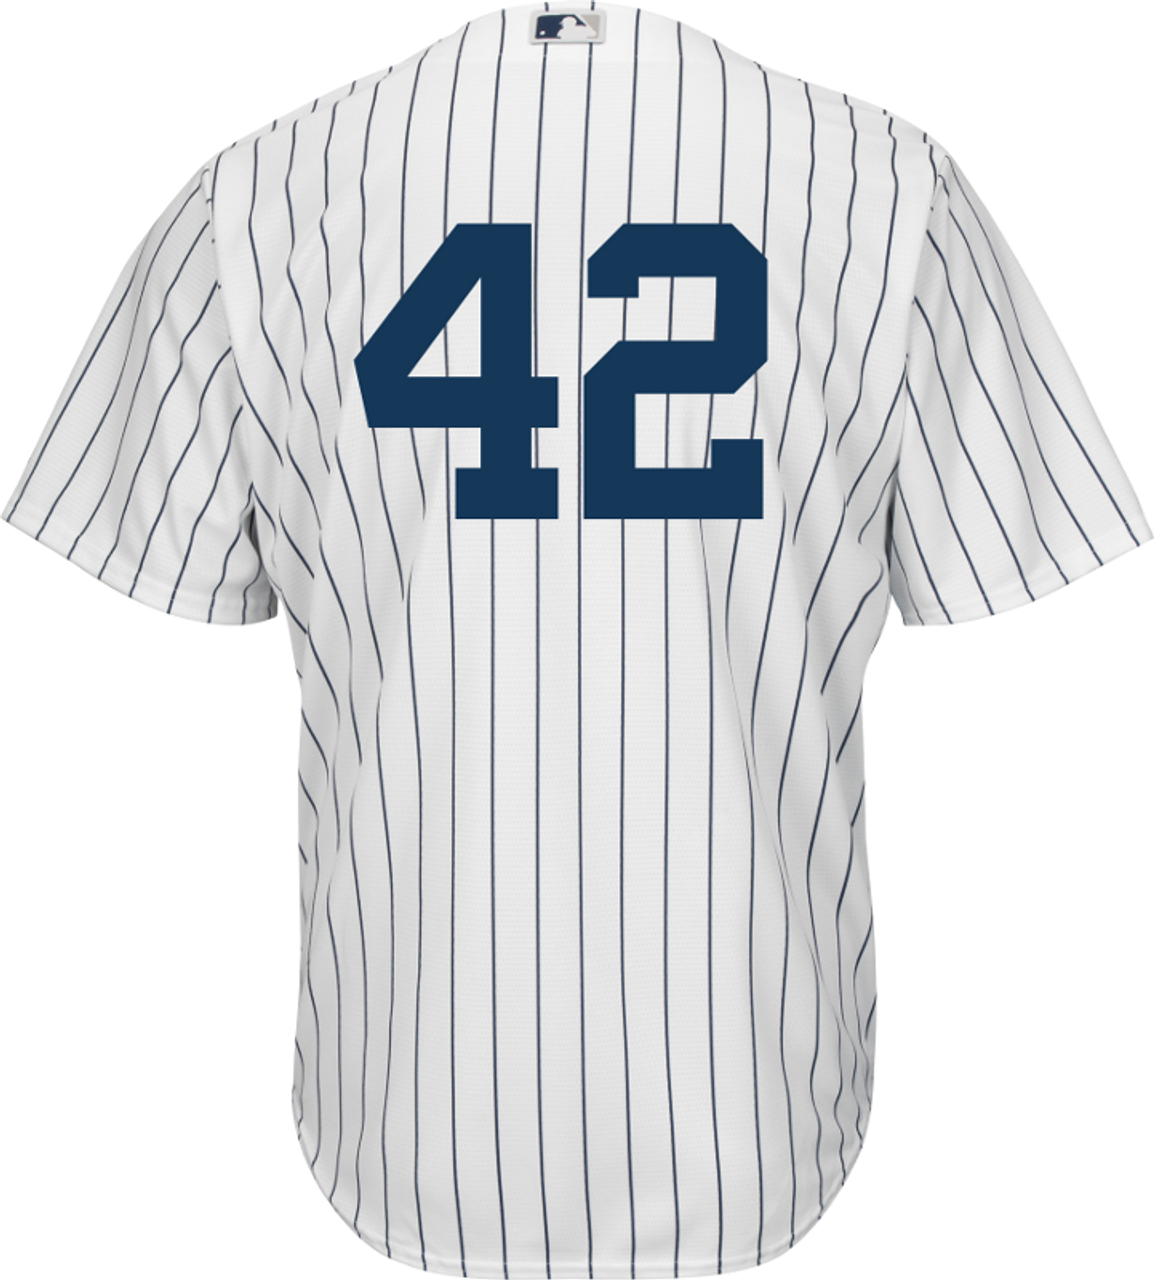 42 baseball jersey jackie robinson